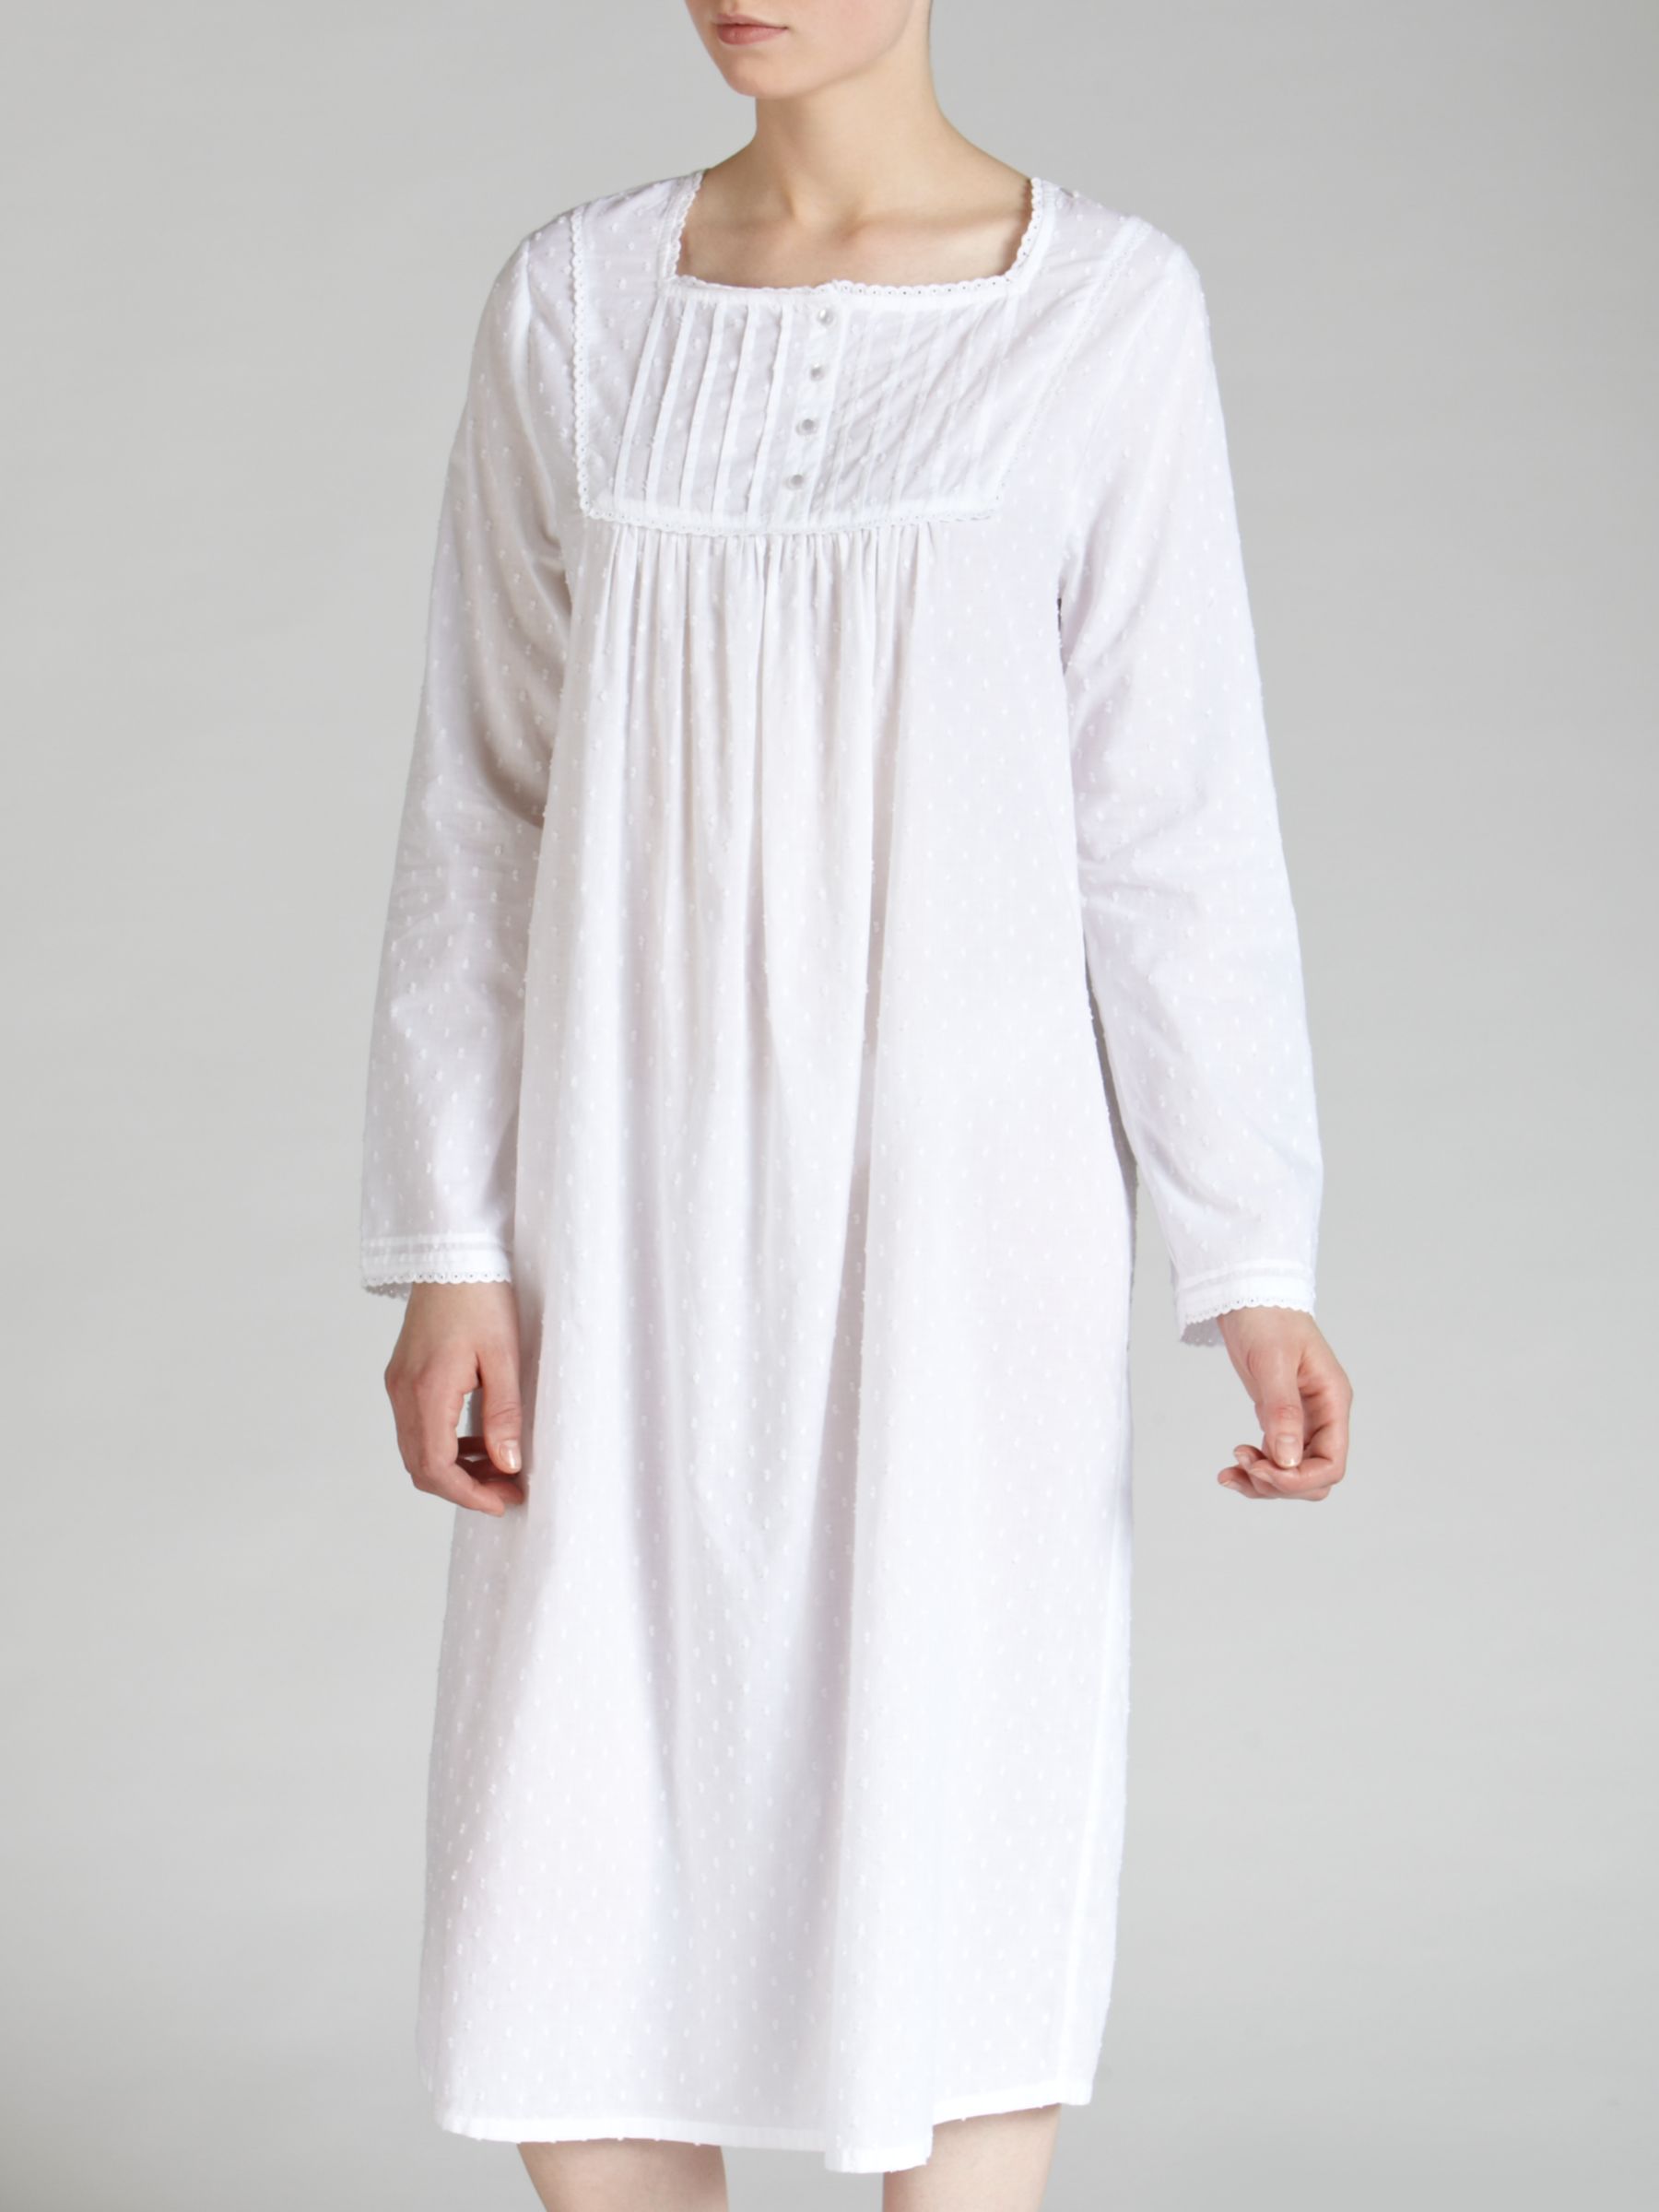 John Lewis Long Cotton Nightdress, White